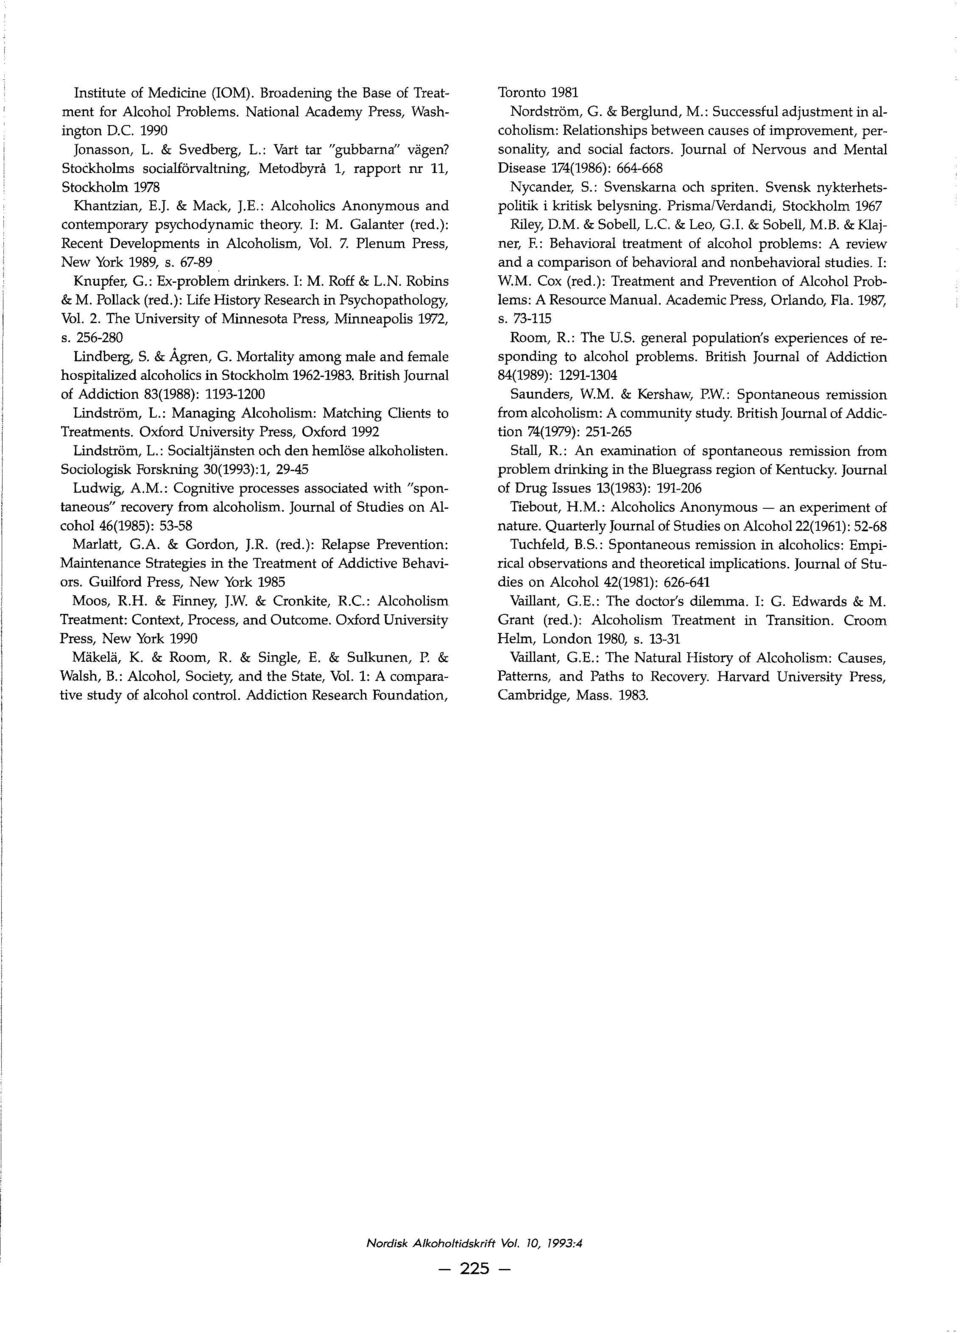 ): Recent Developments in Alcoholism, Vol. 7. Plenum Press, New York 1989, s. 67-89 Knupfer, G.: Ex-problem drinkers. l: M. Roff & L.N. Robins & M. Pollack (red.